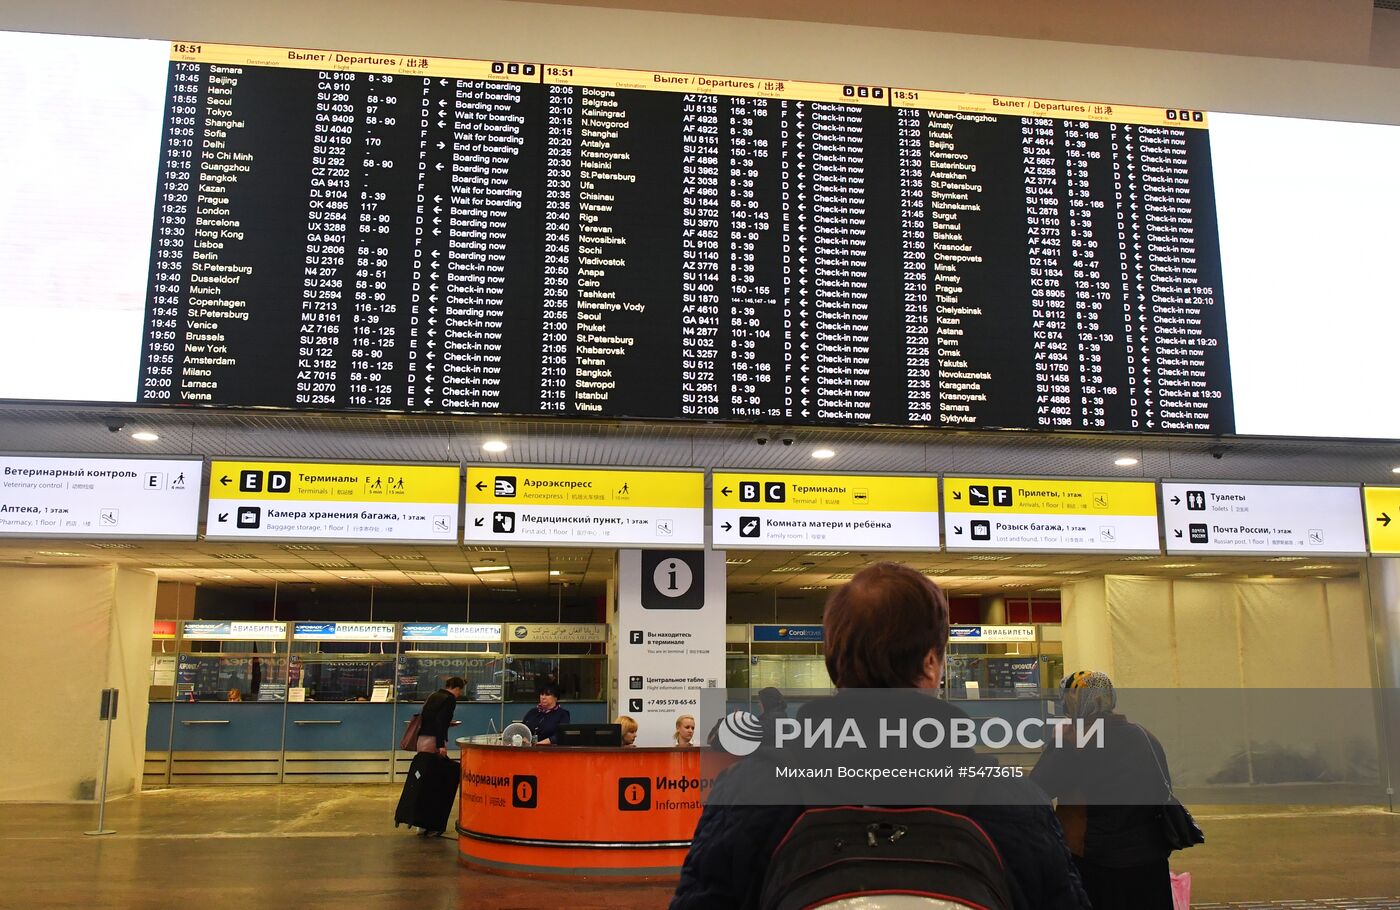 Первый рейс авиакомпании "Аэрофлот" из Москвы в Каир